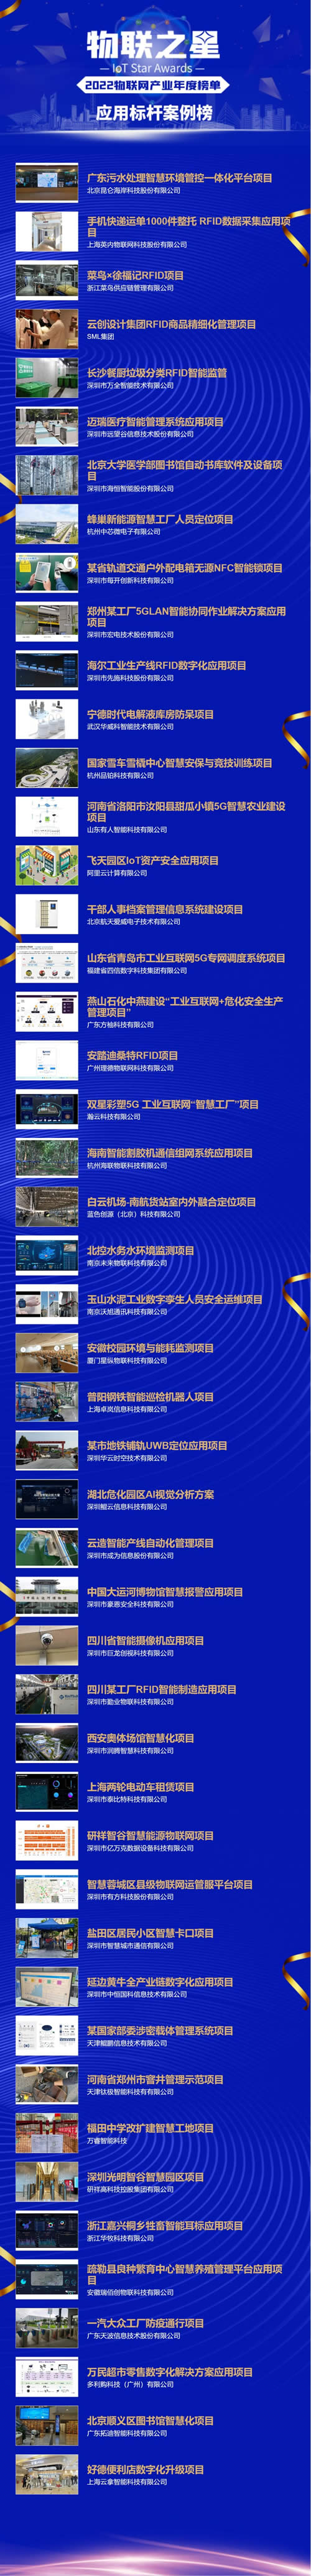 2022年度中国物联网应用标杆案例榜.jpg